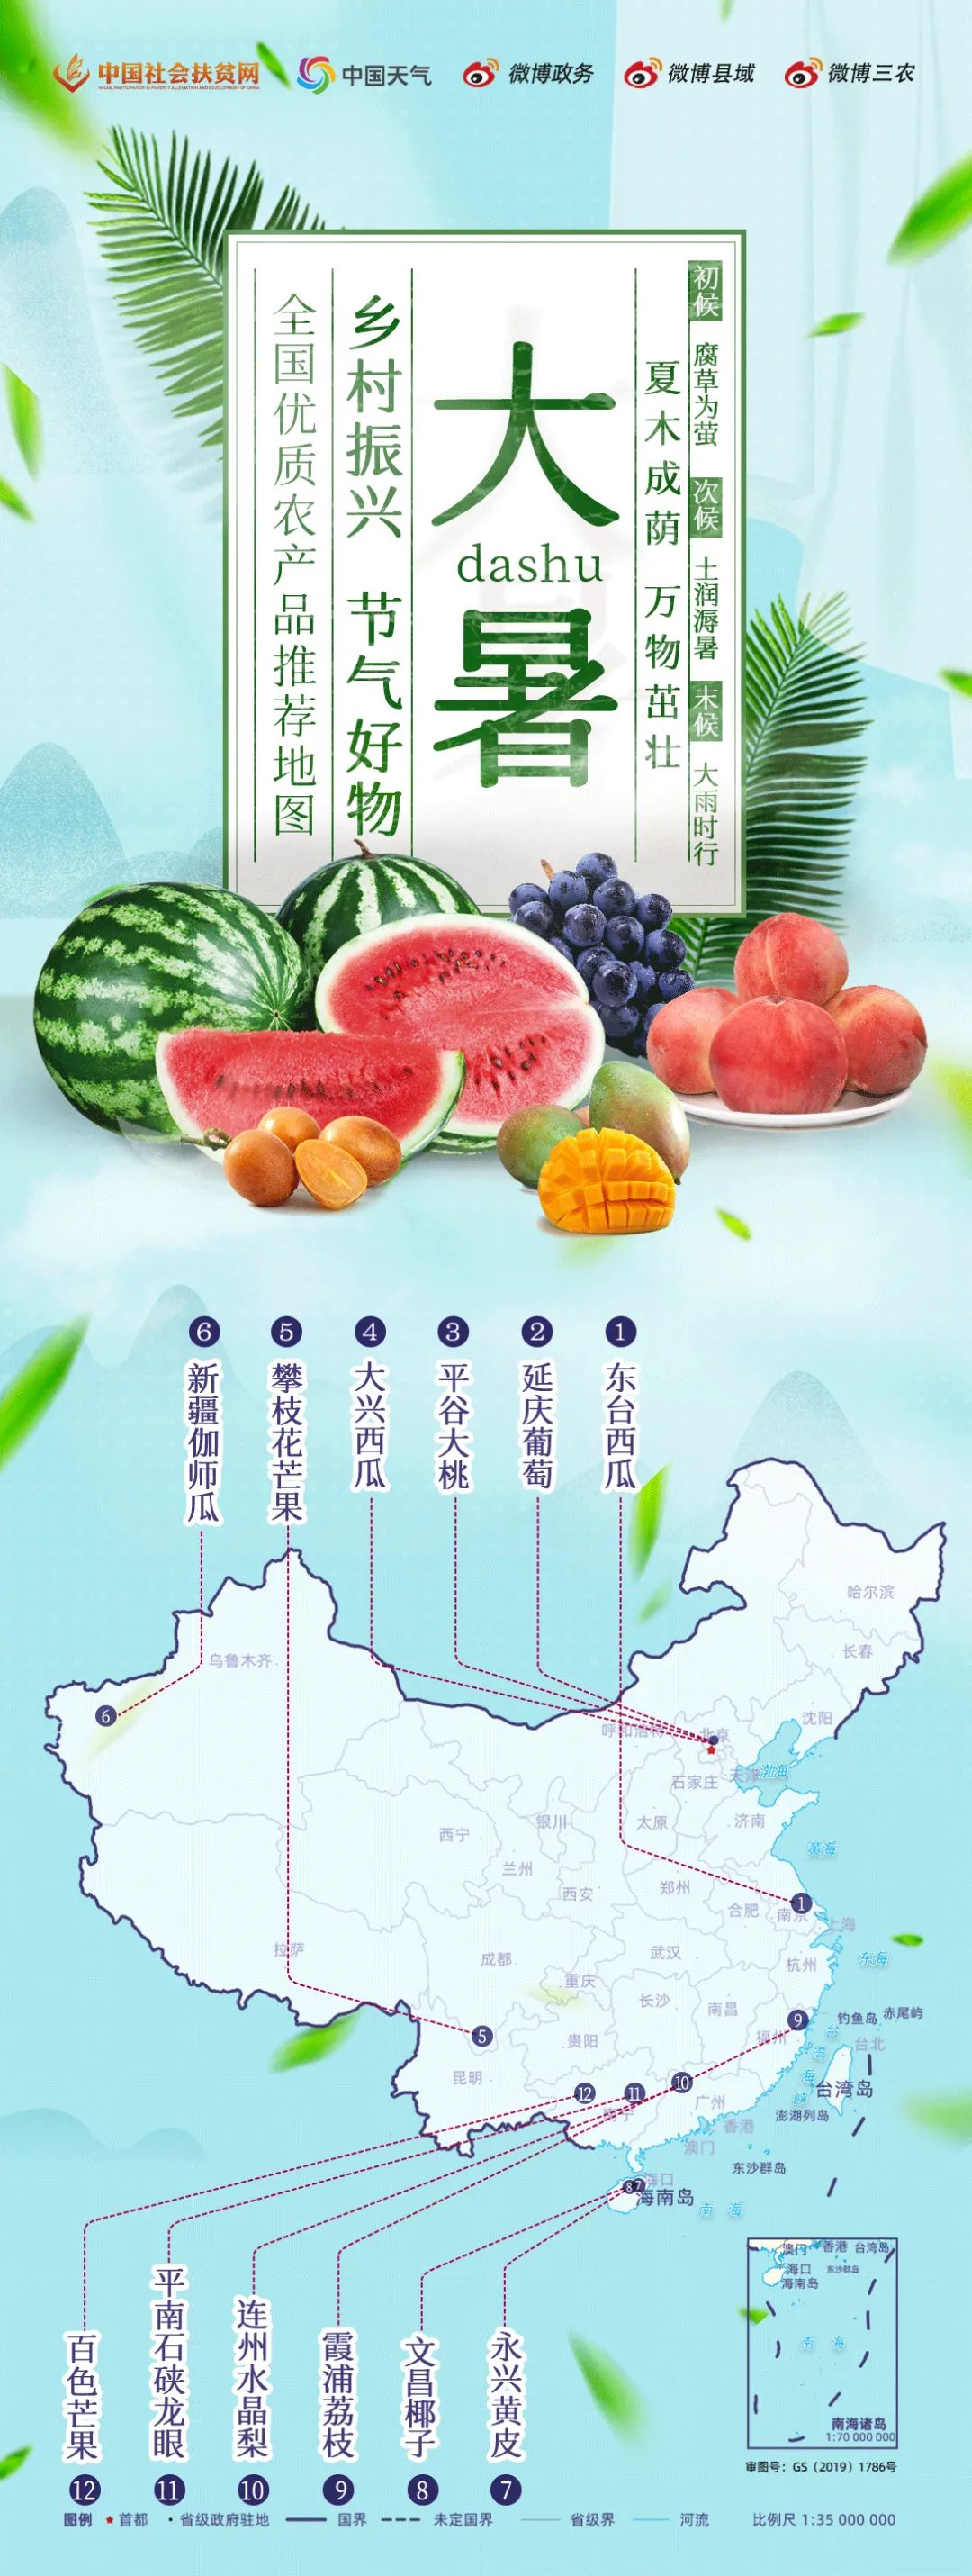 大暑节气至!最新全国优质农产品推荐地图来了 快来品尝盛夏的味道